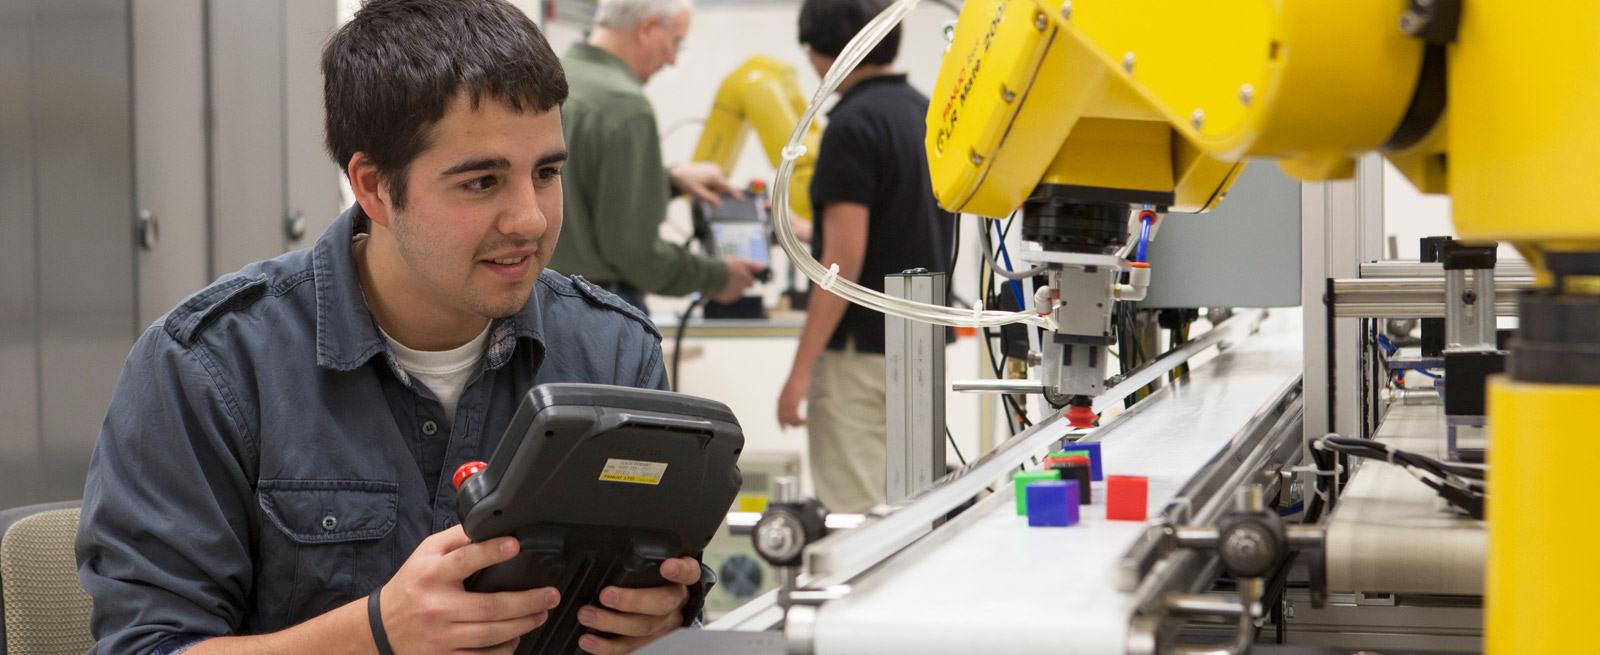 Student using equipment in WCTC Robotics Lab